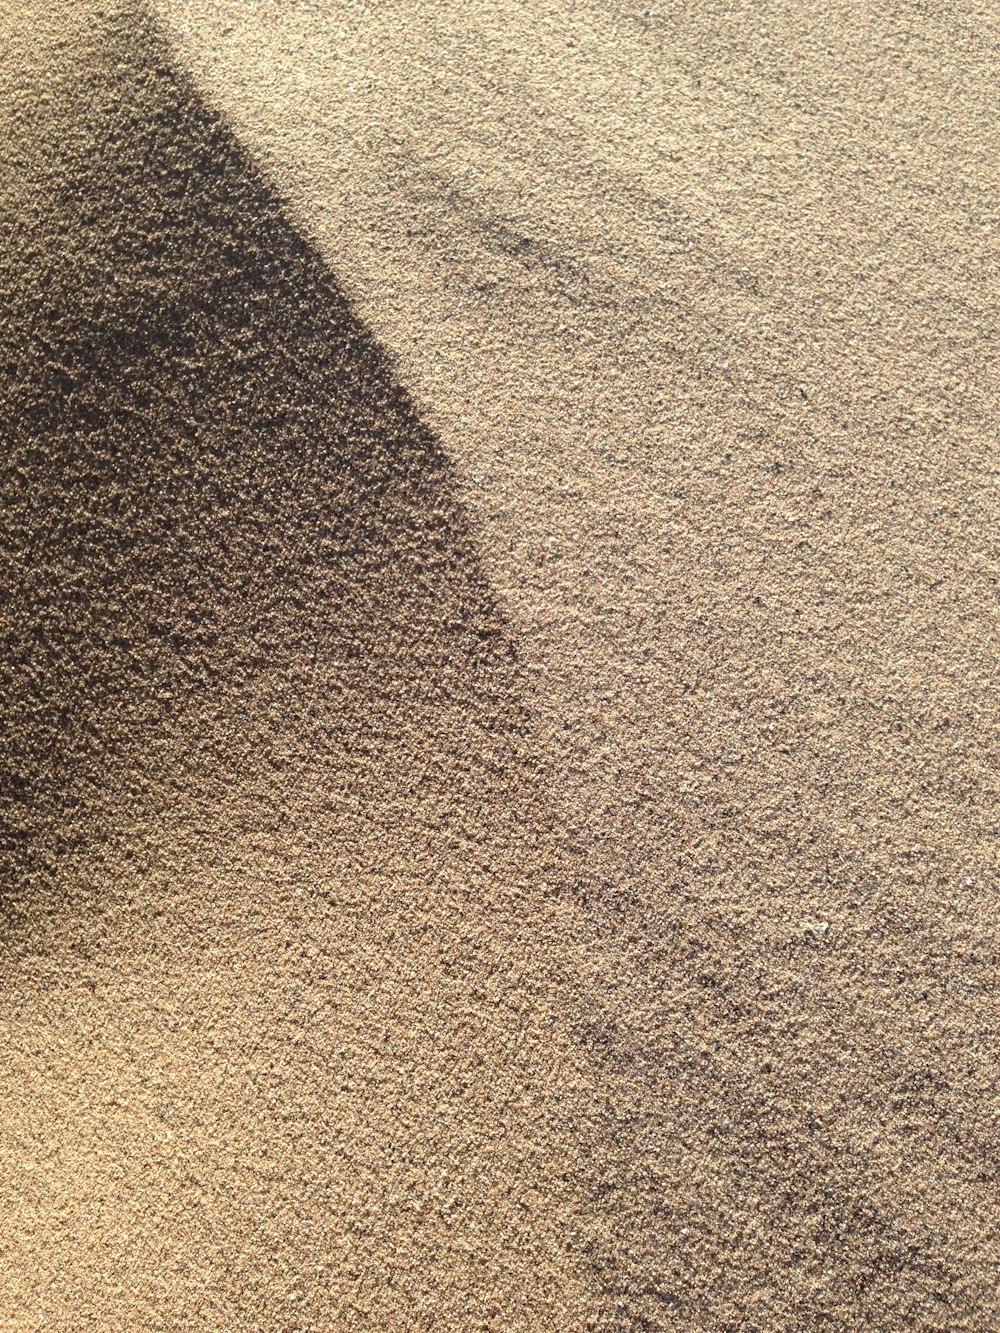 arena marrón con sombra de persona